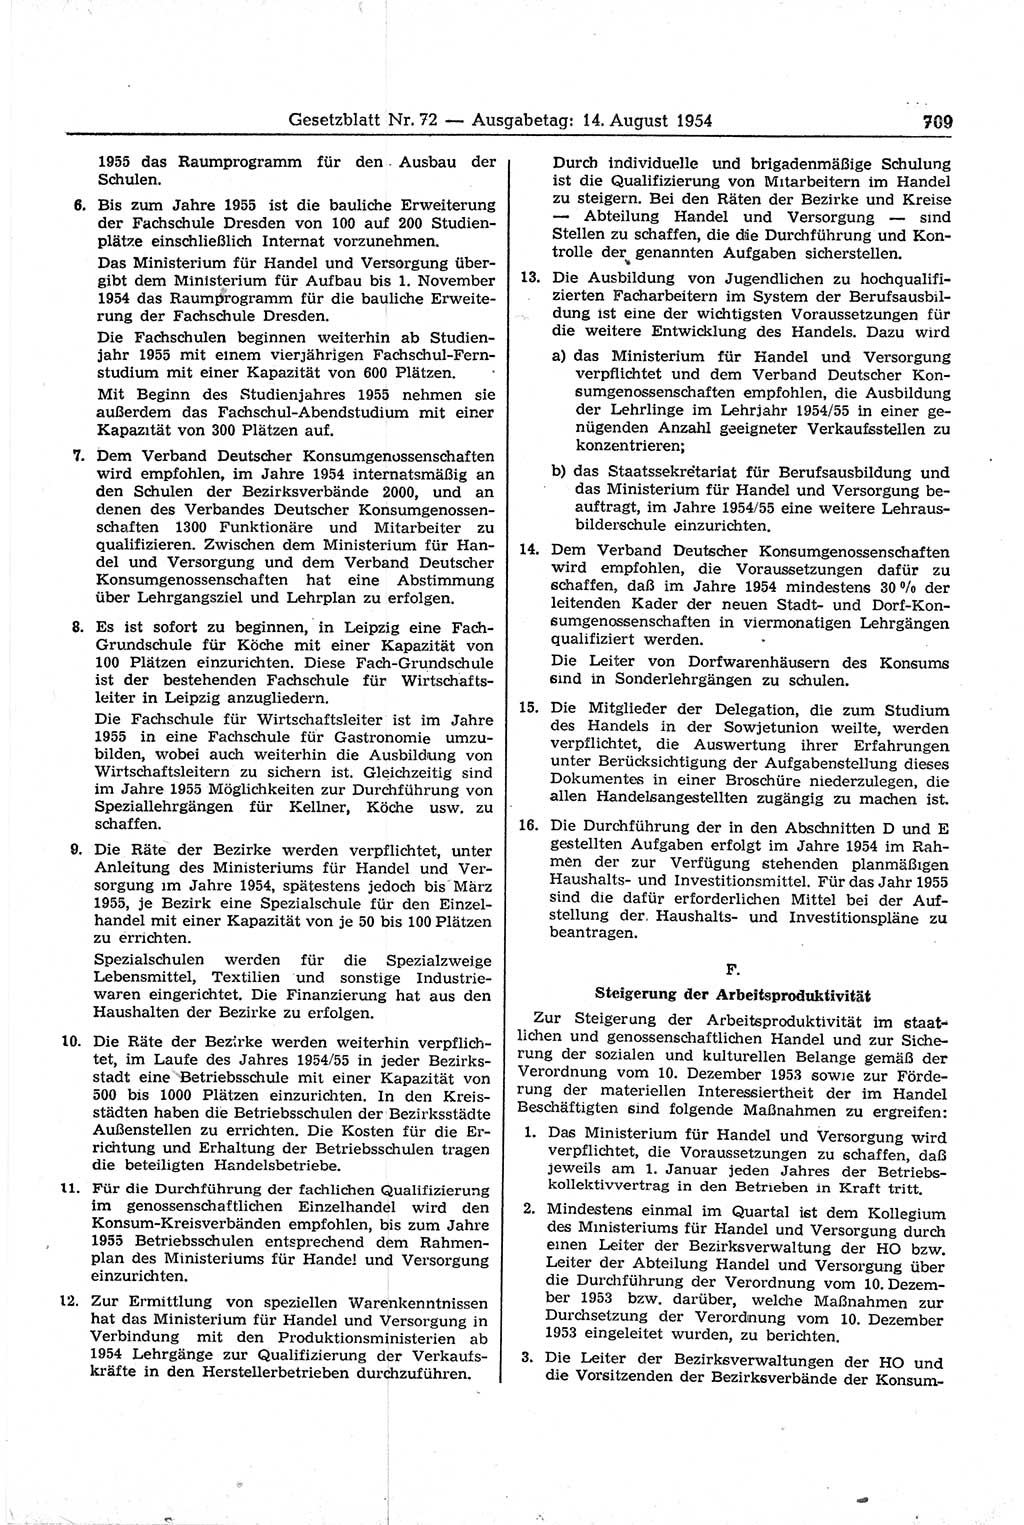 Gesetzblatt (GBl.) der Deutschen Demokratischen Republik (DDR) 1954, Seite 709 (GBl. DDR 1954, S. 709)